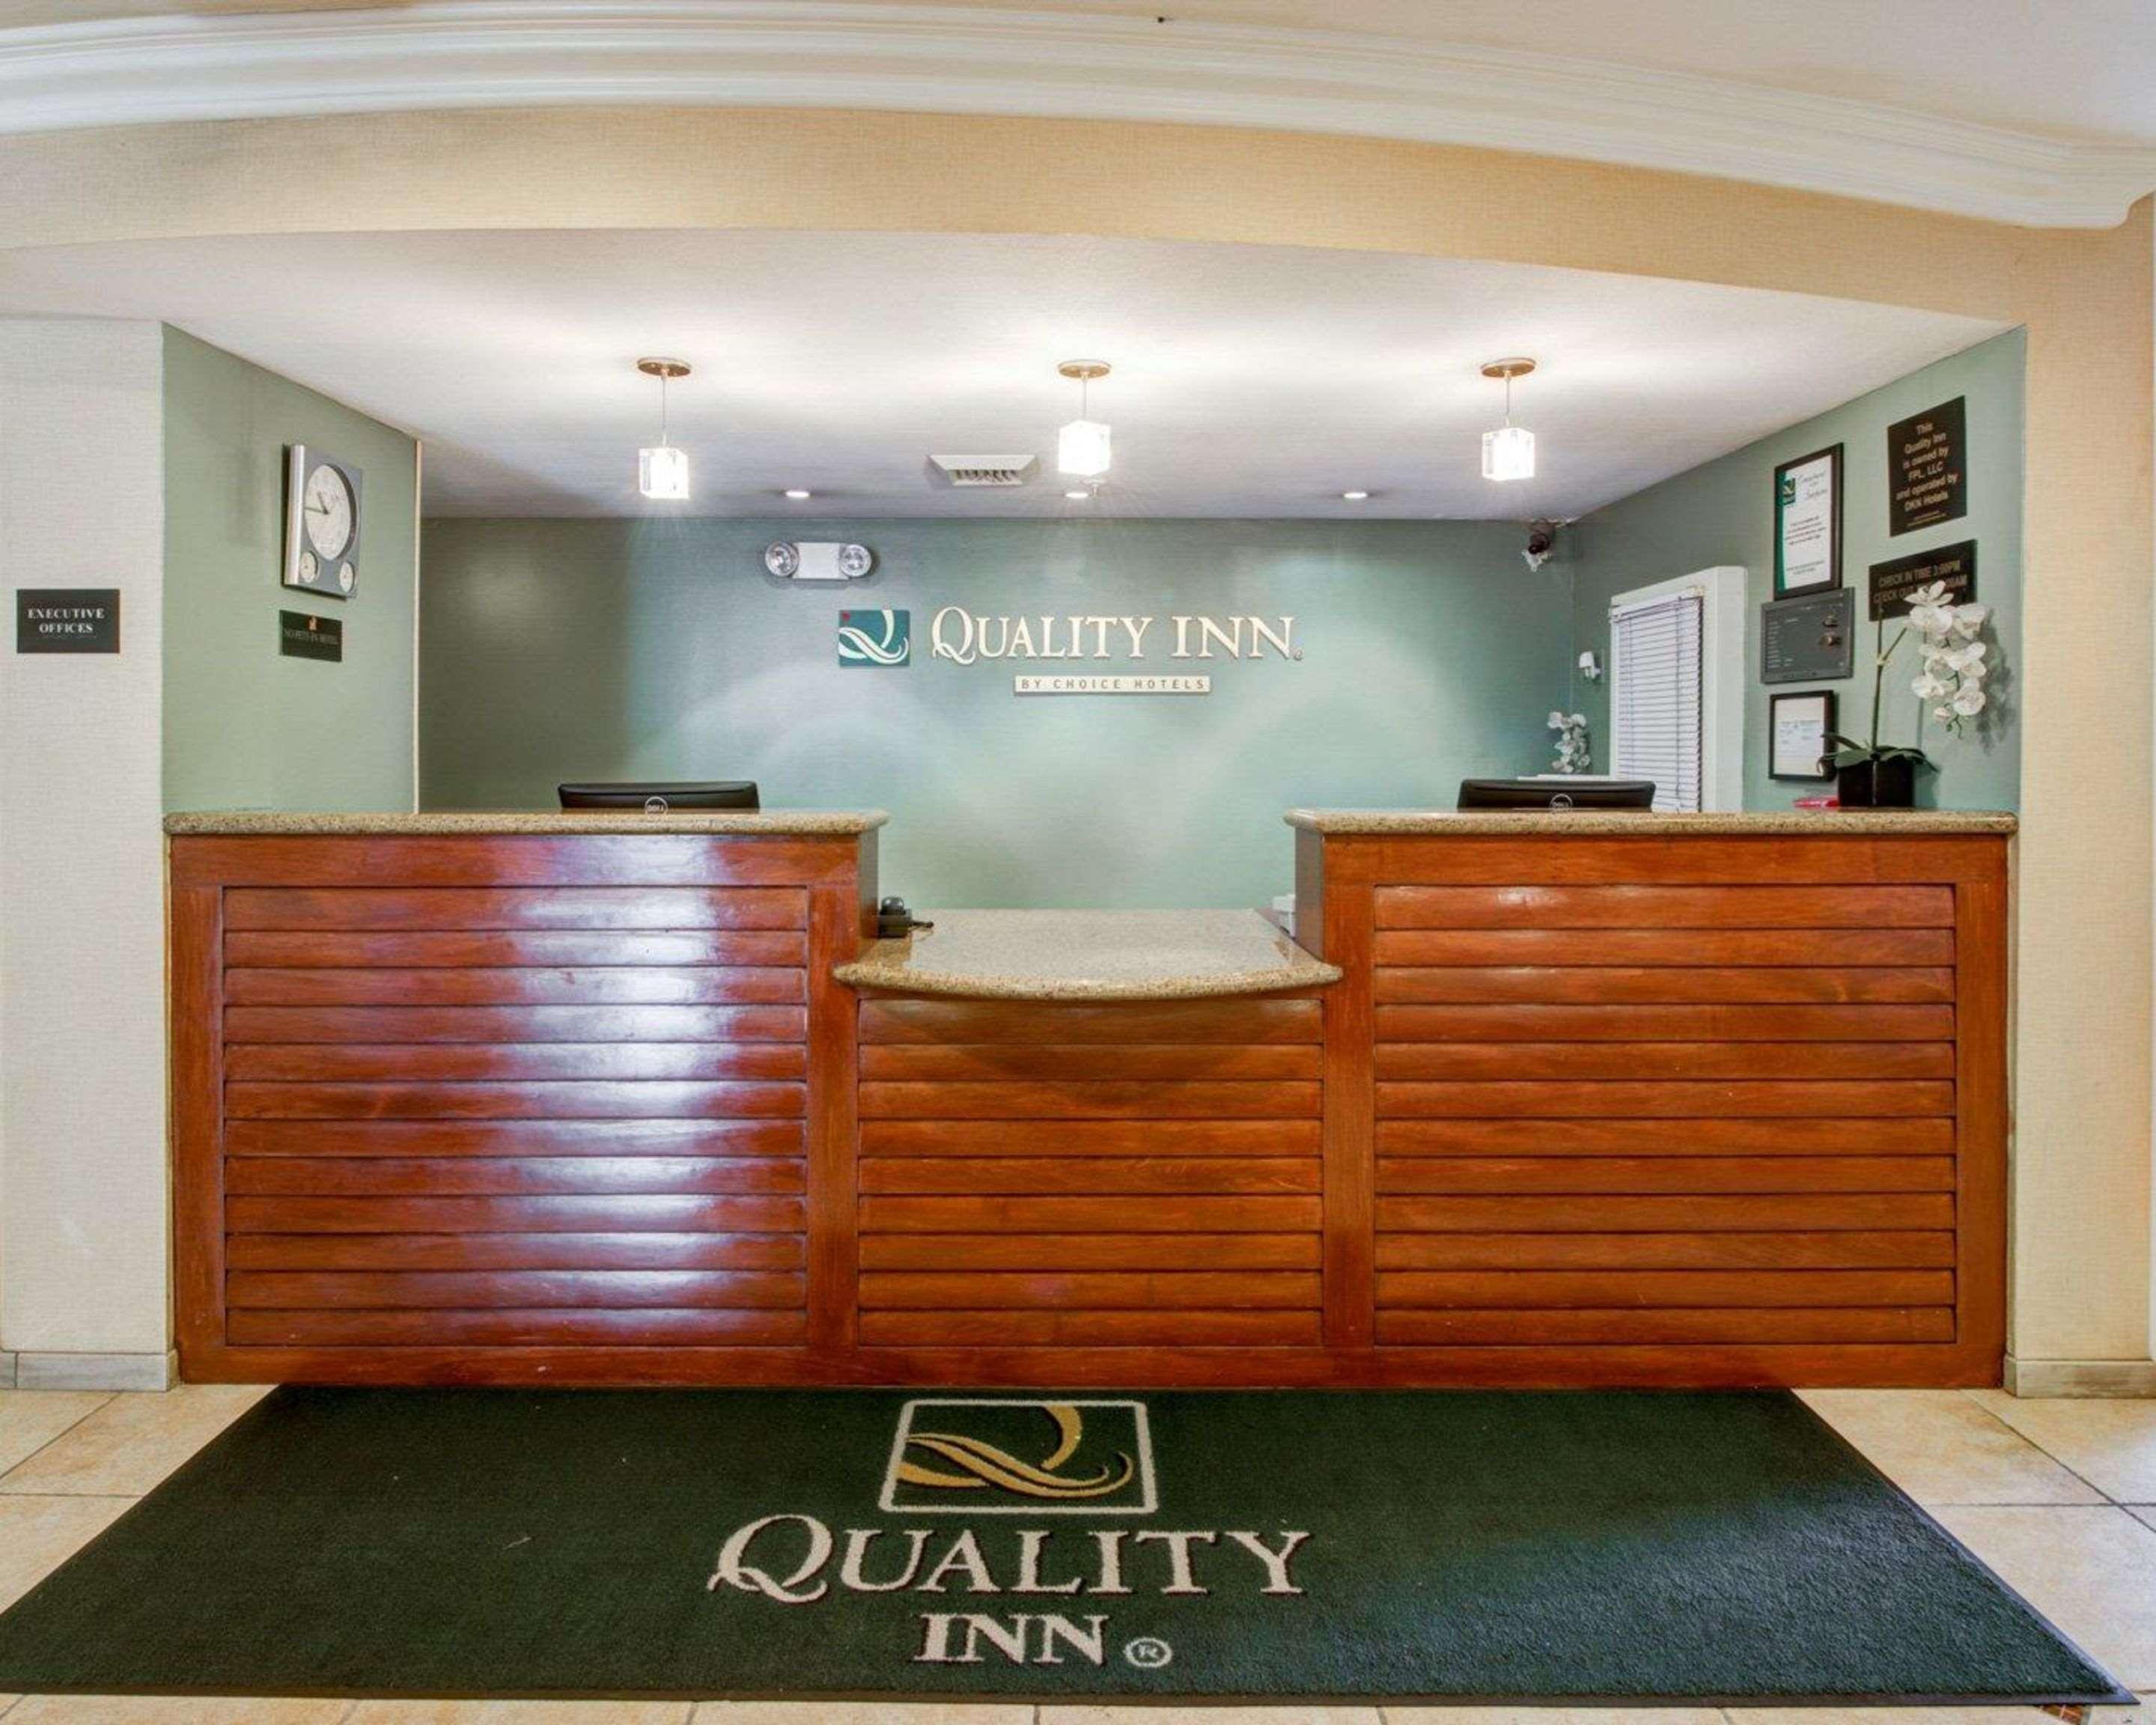 Quality Inn Placentia Anaheim